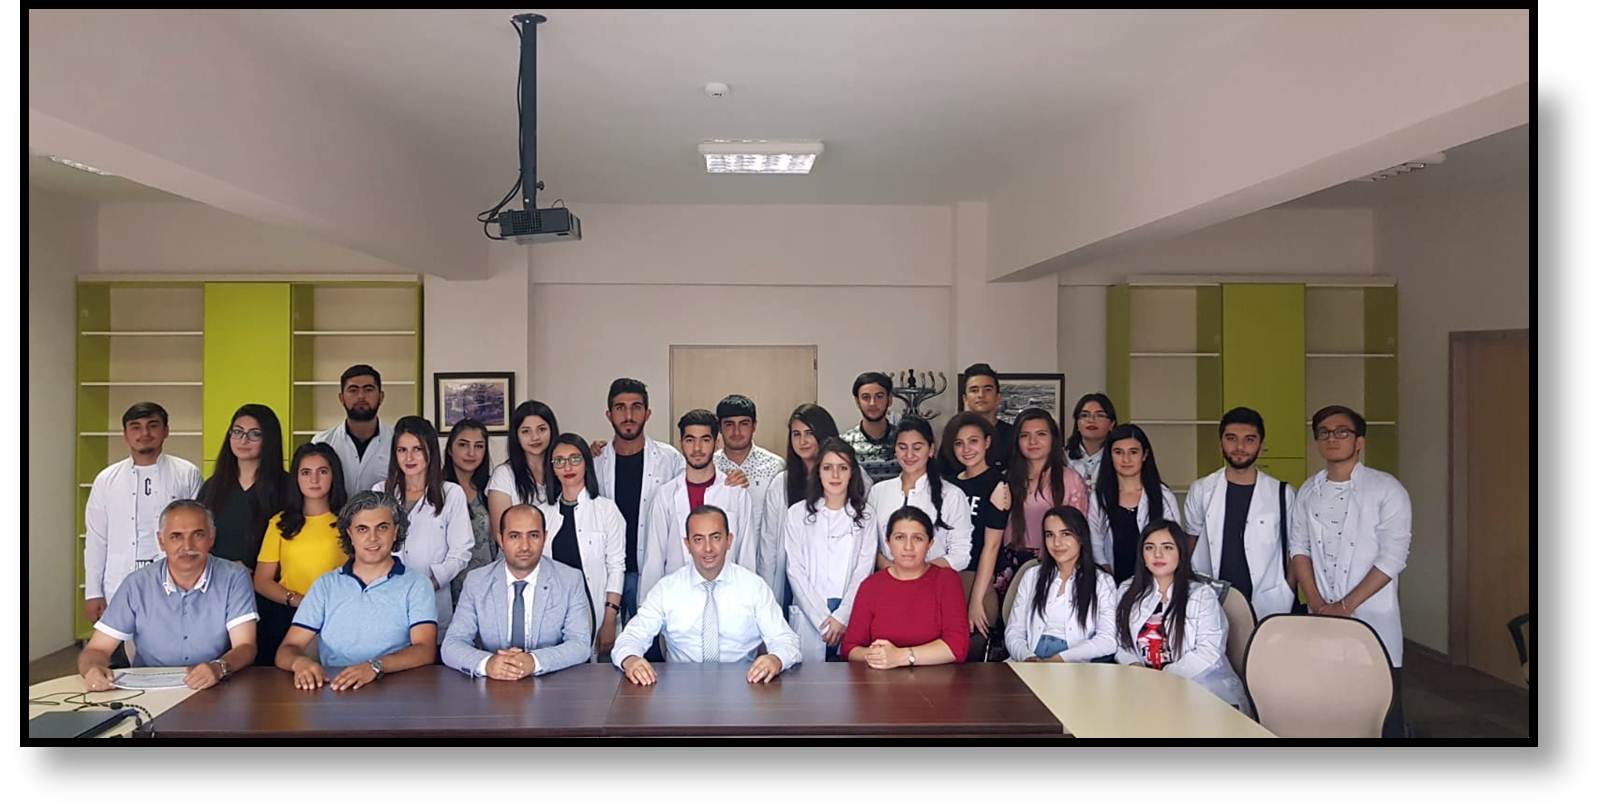 erzincan binali yildirim universitesi find and study 64 - Université Erzincan Binali Yıldırım